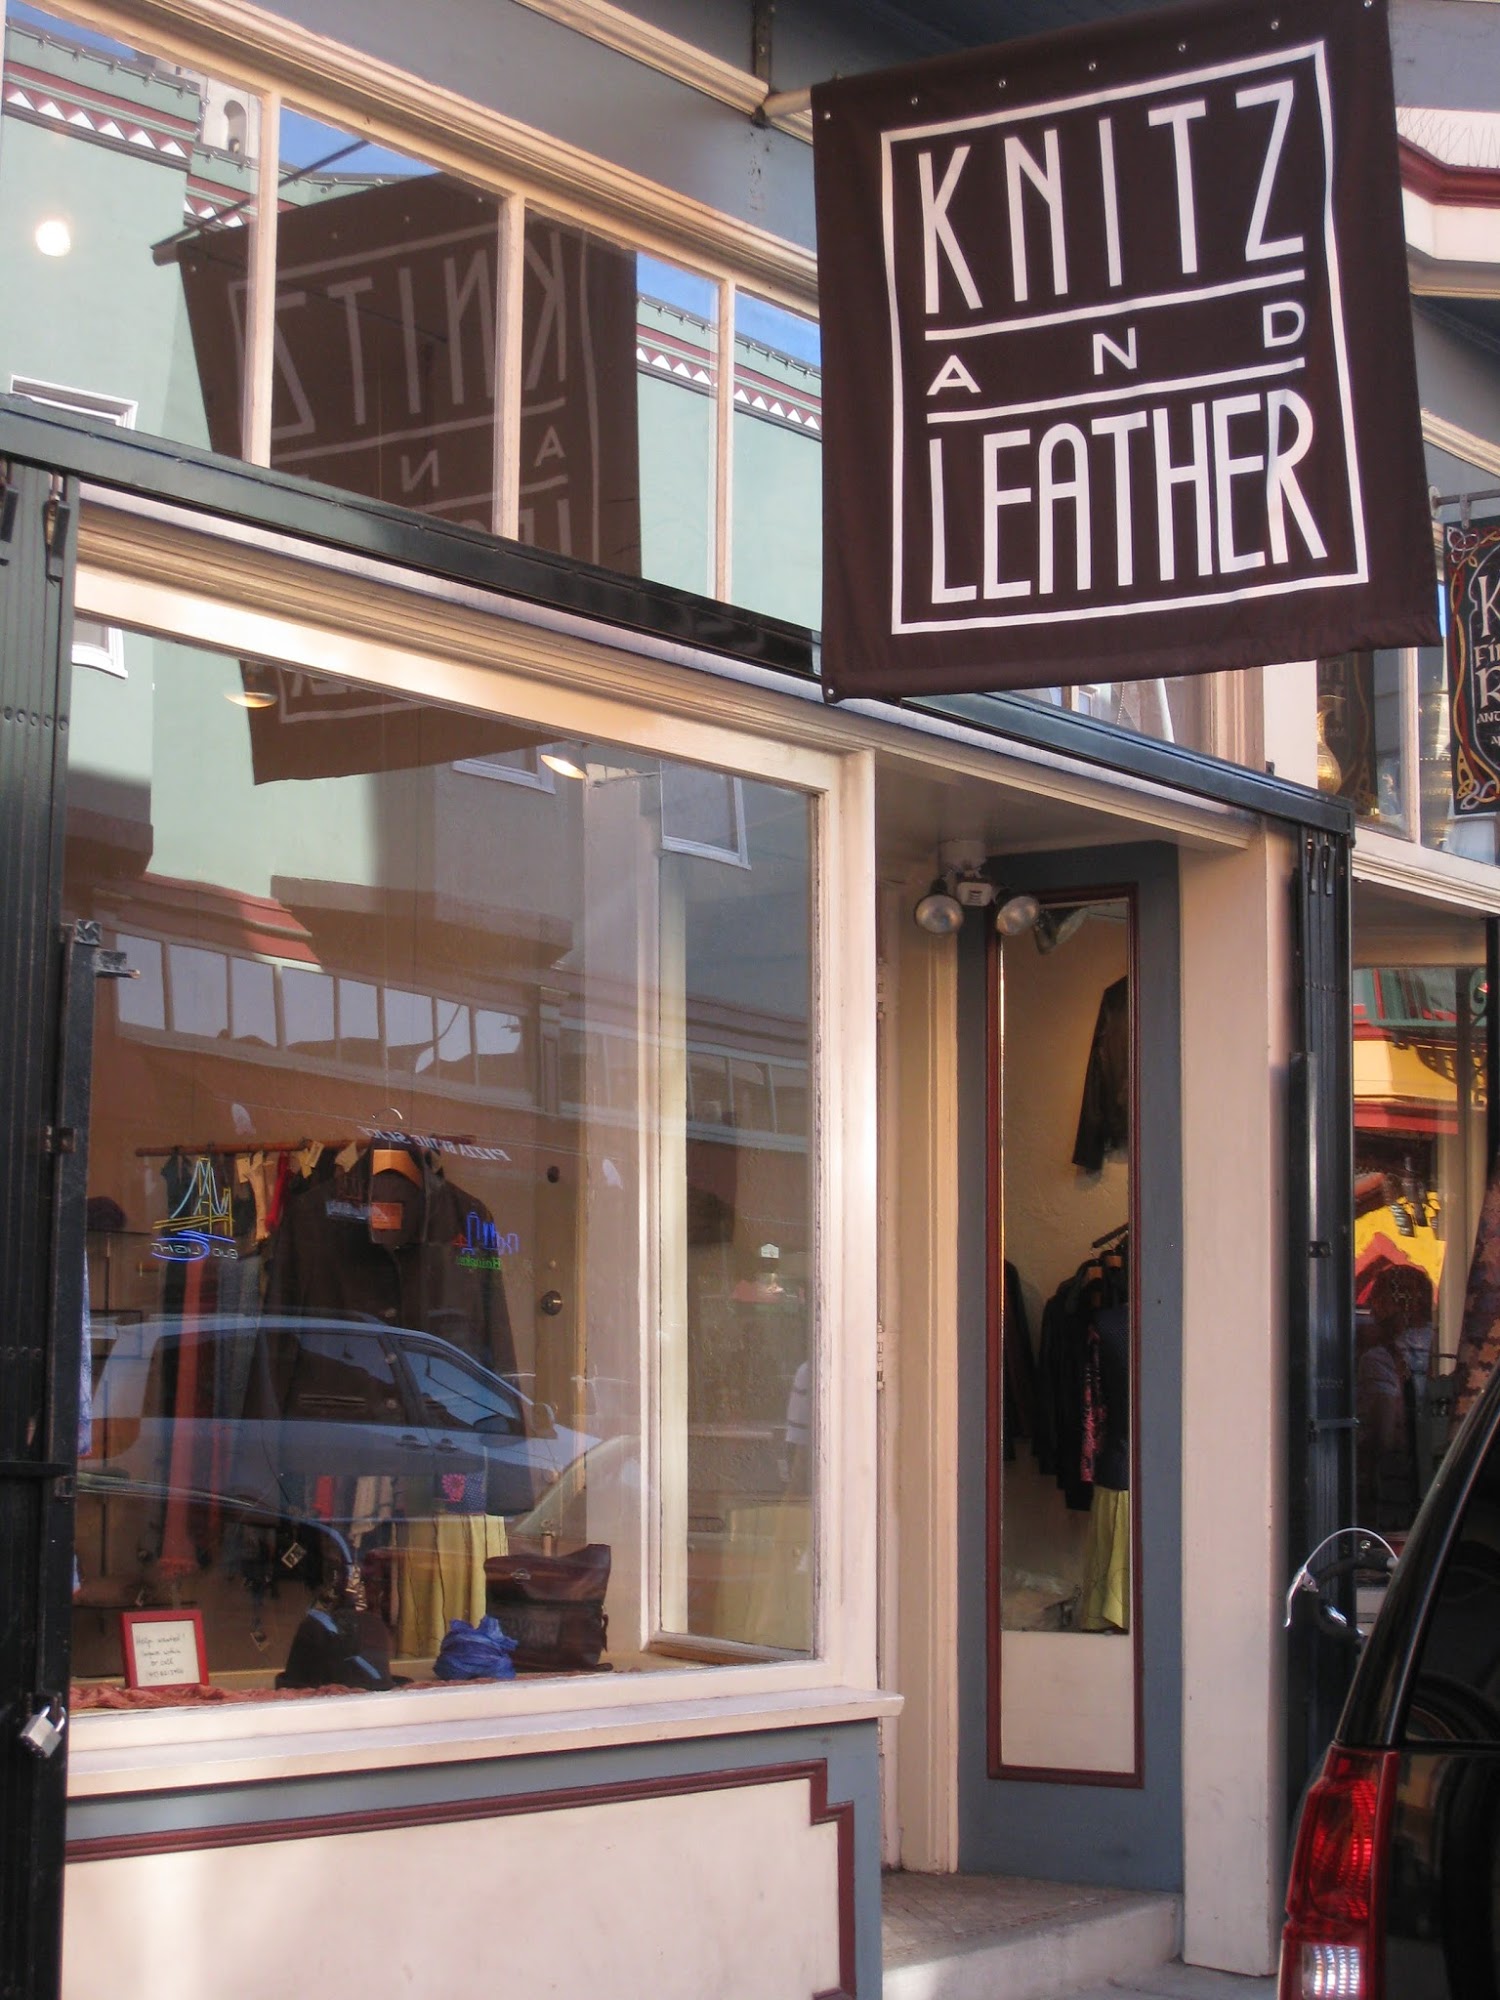 Knitz & Leather